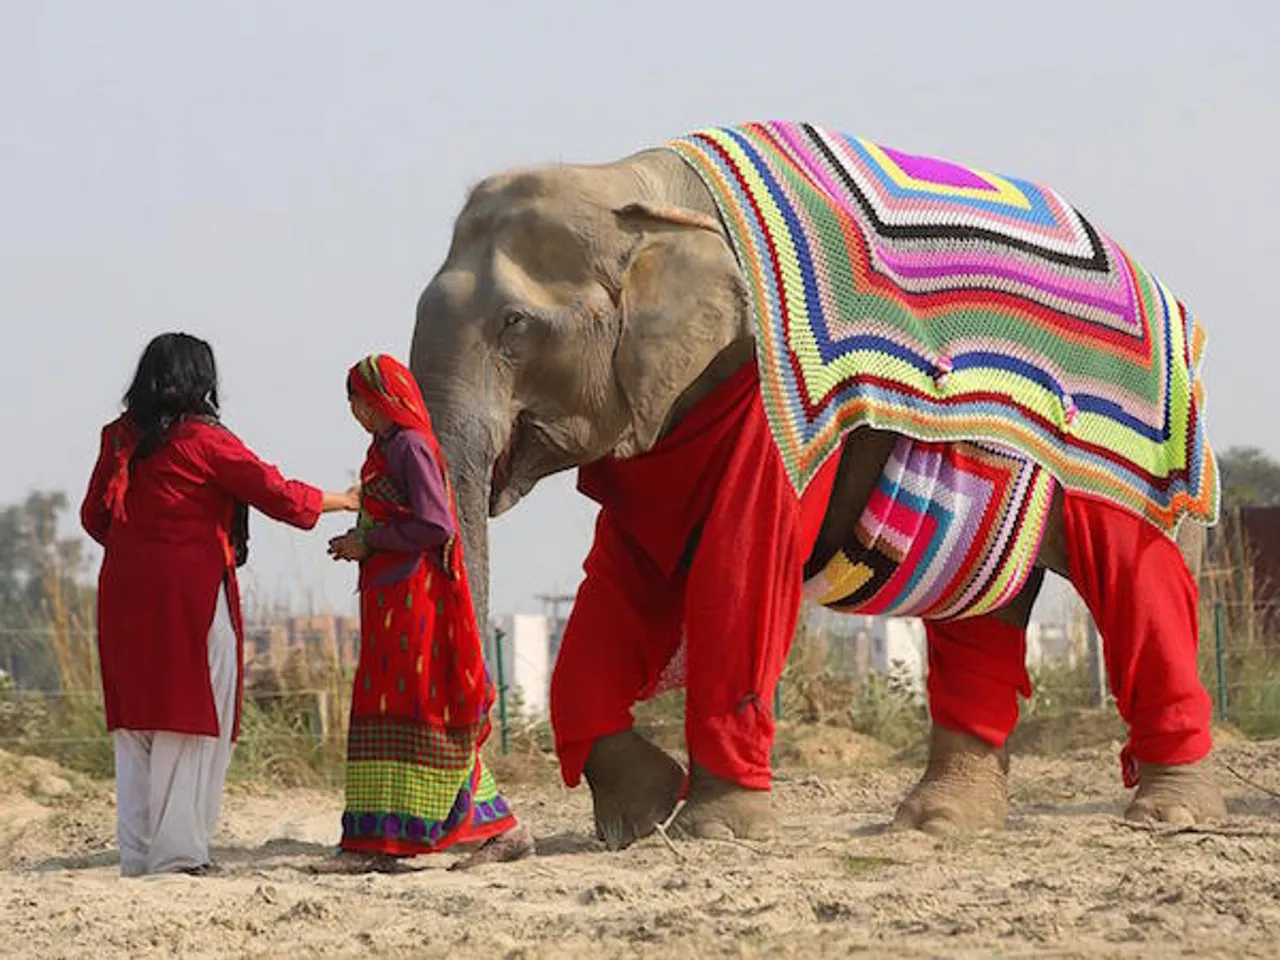 Elephants wear woollen jumpers